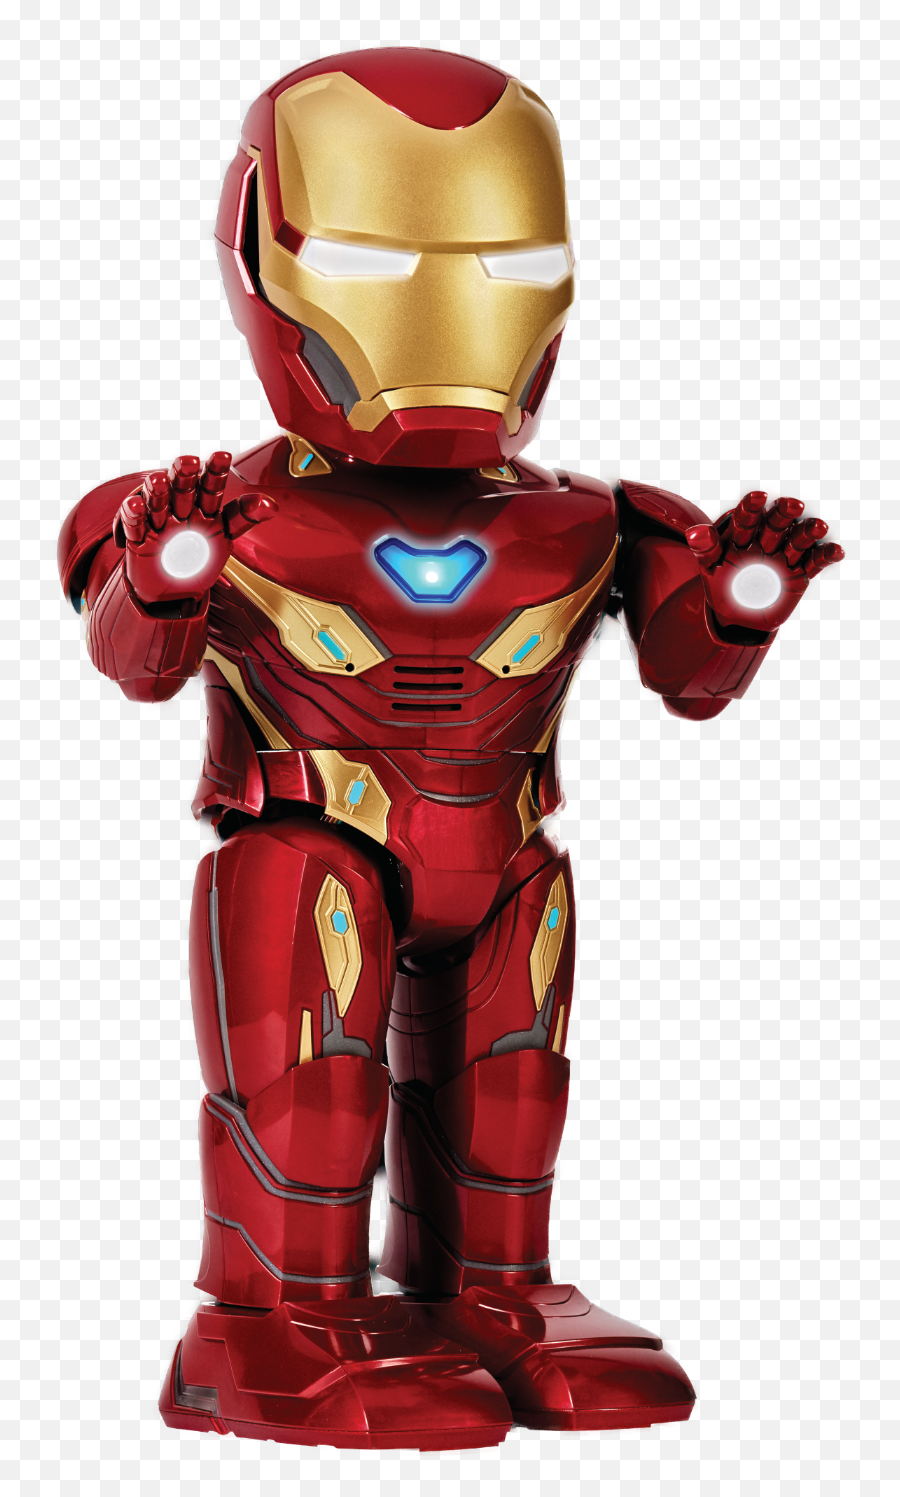 Ubtech Ironman Jcmatthew Website - Iron Man Robot Toy Png,Iron Man Helmet Png